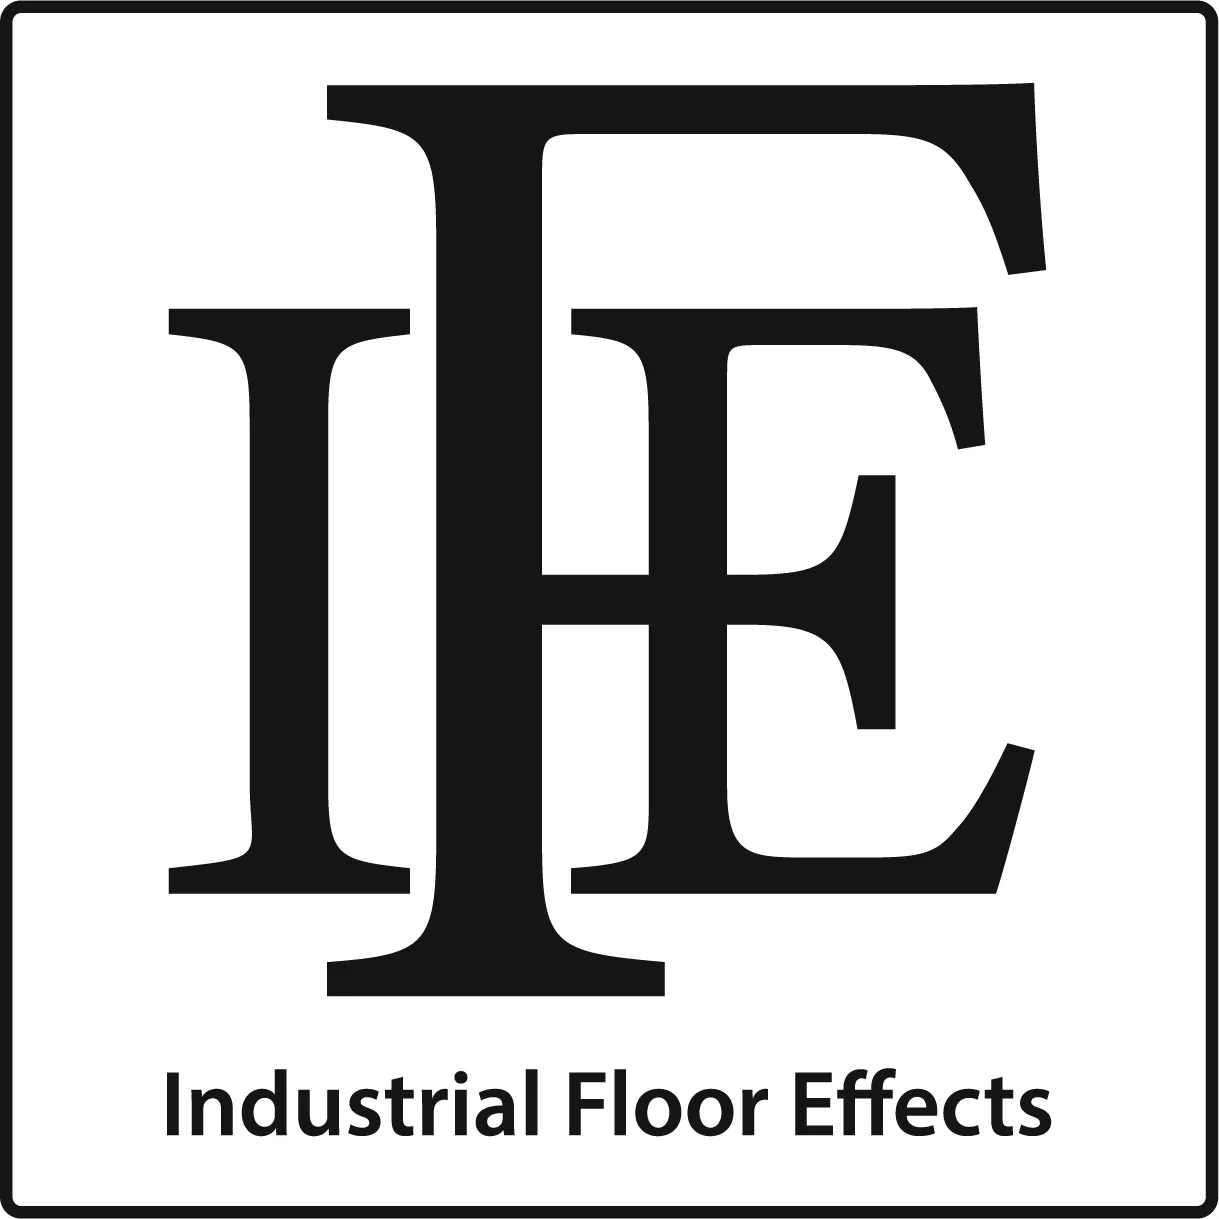 Industrial Floor Effects